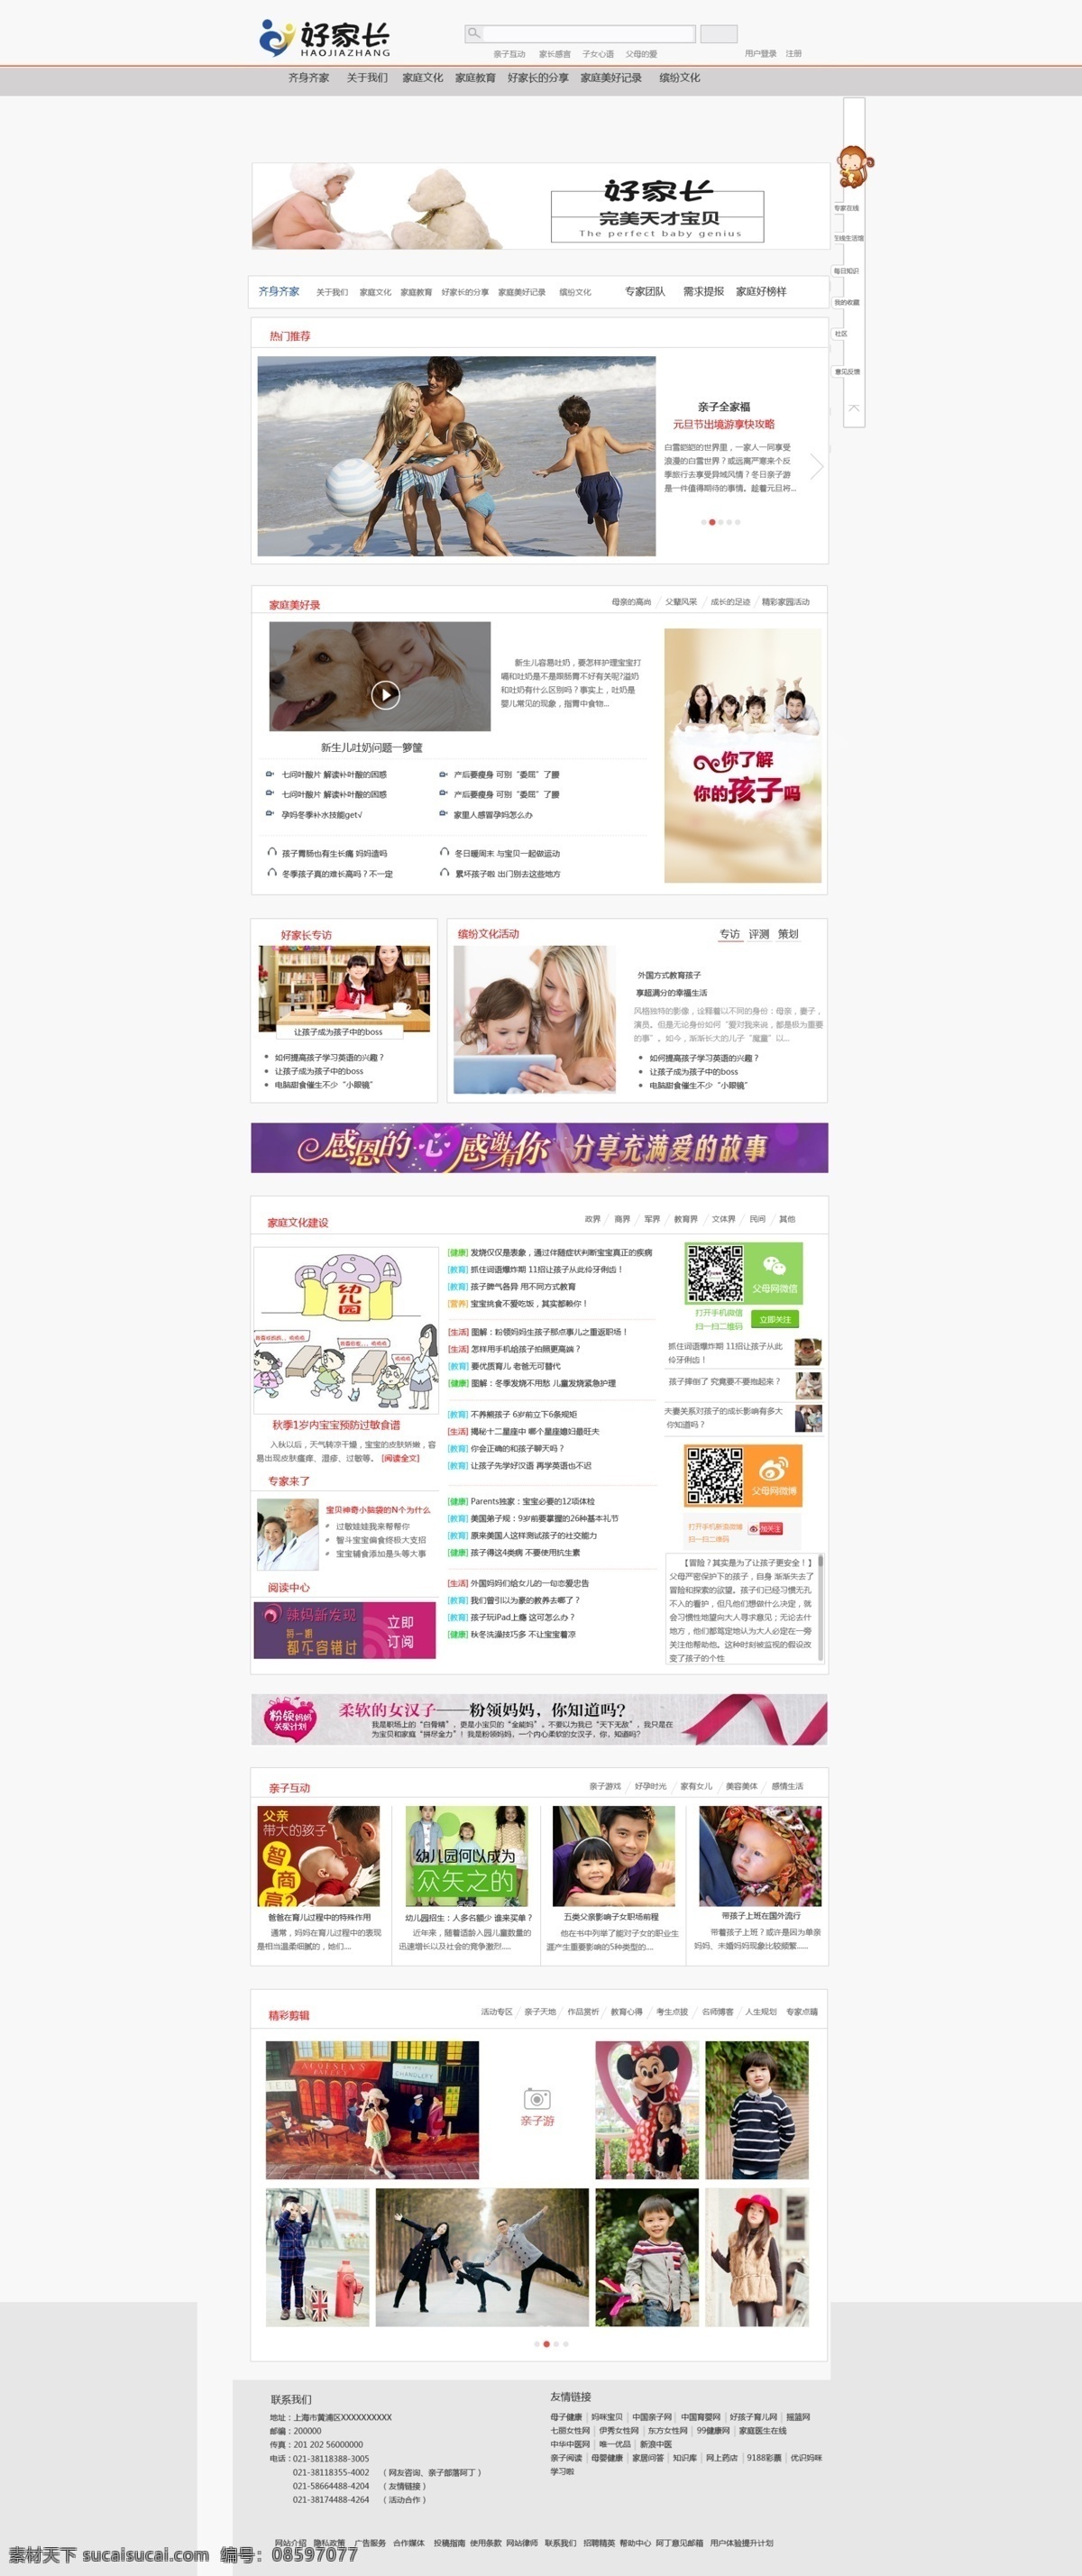 好 家长 网站首页 效果图 宝宝 家庭 亲子 原创设计 原创网页设计